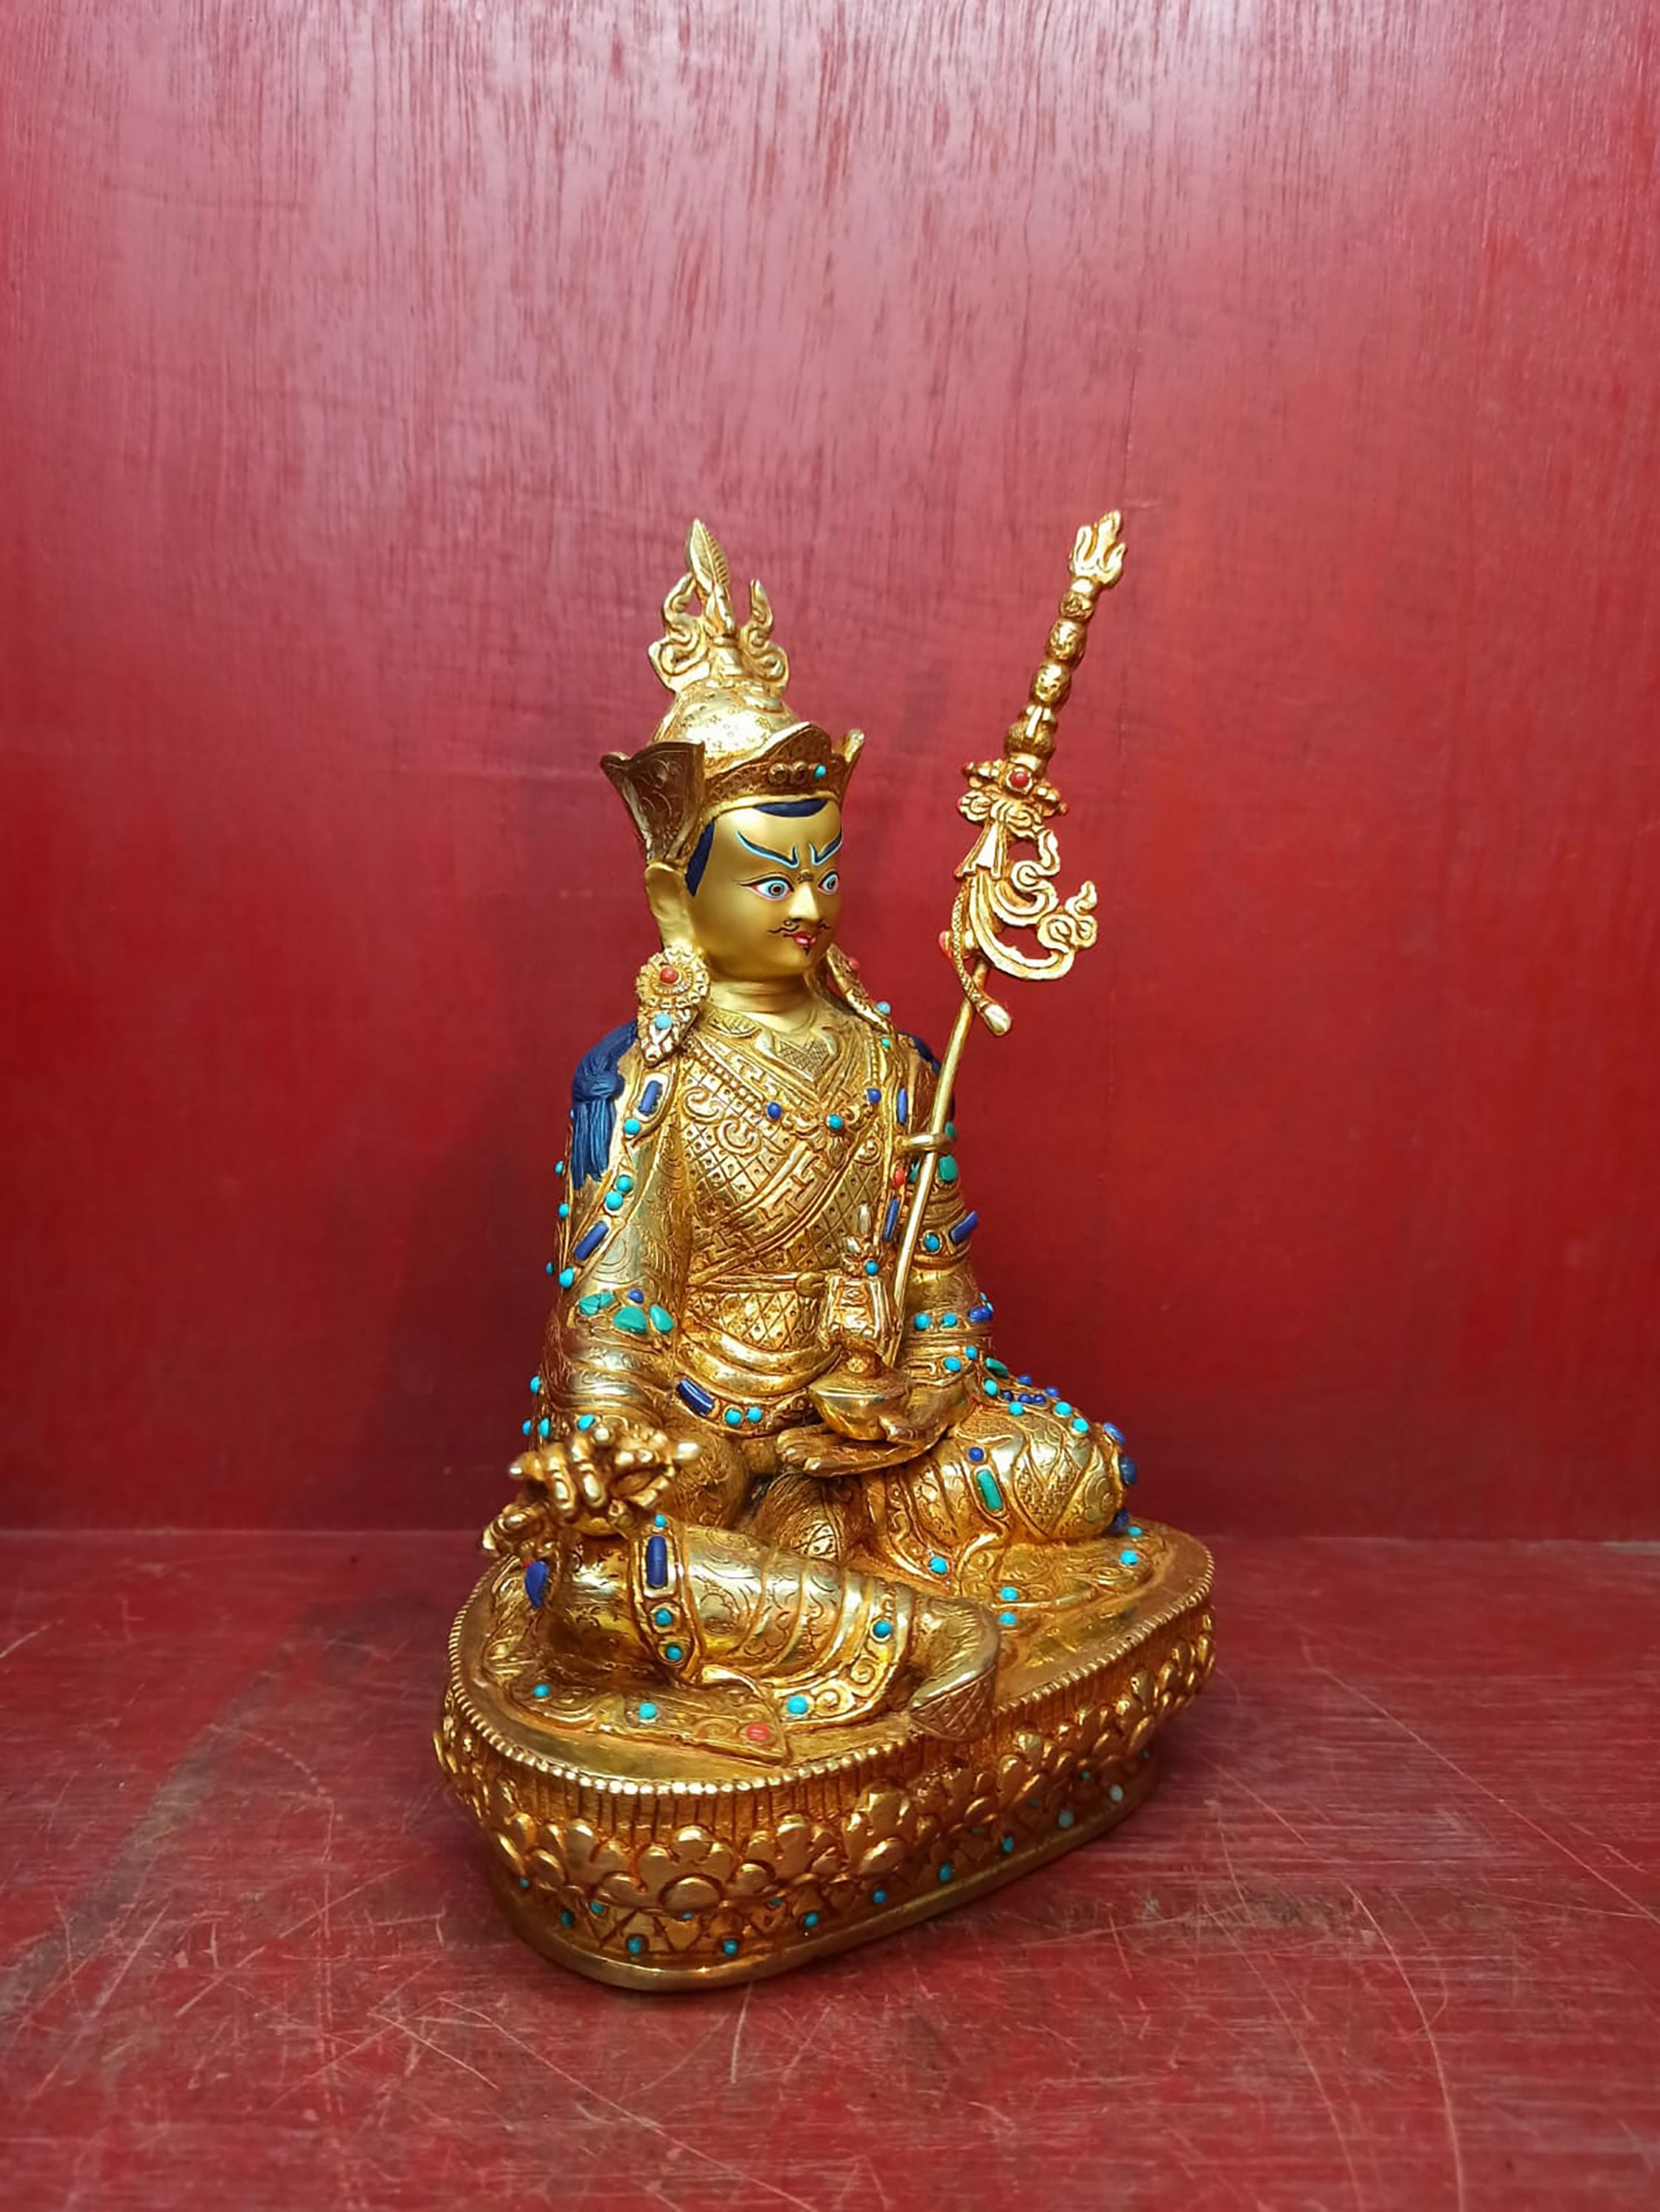 Buddhist Handmade Statue Of Padmasambhava guru Rinpoche, full Fire Gold Plated, face Painted, stone Setting